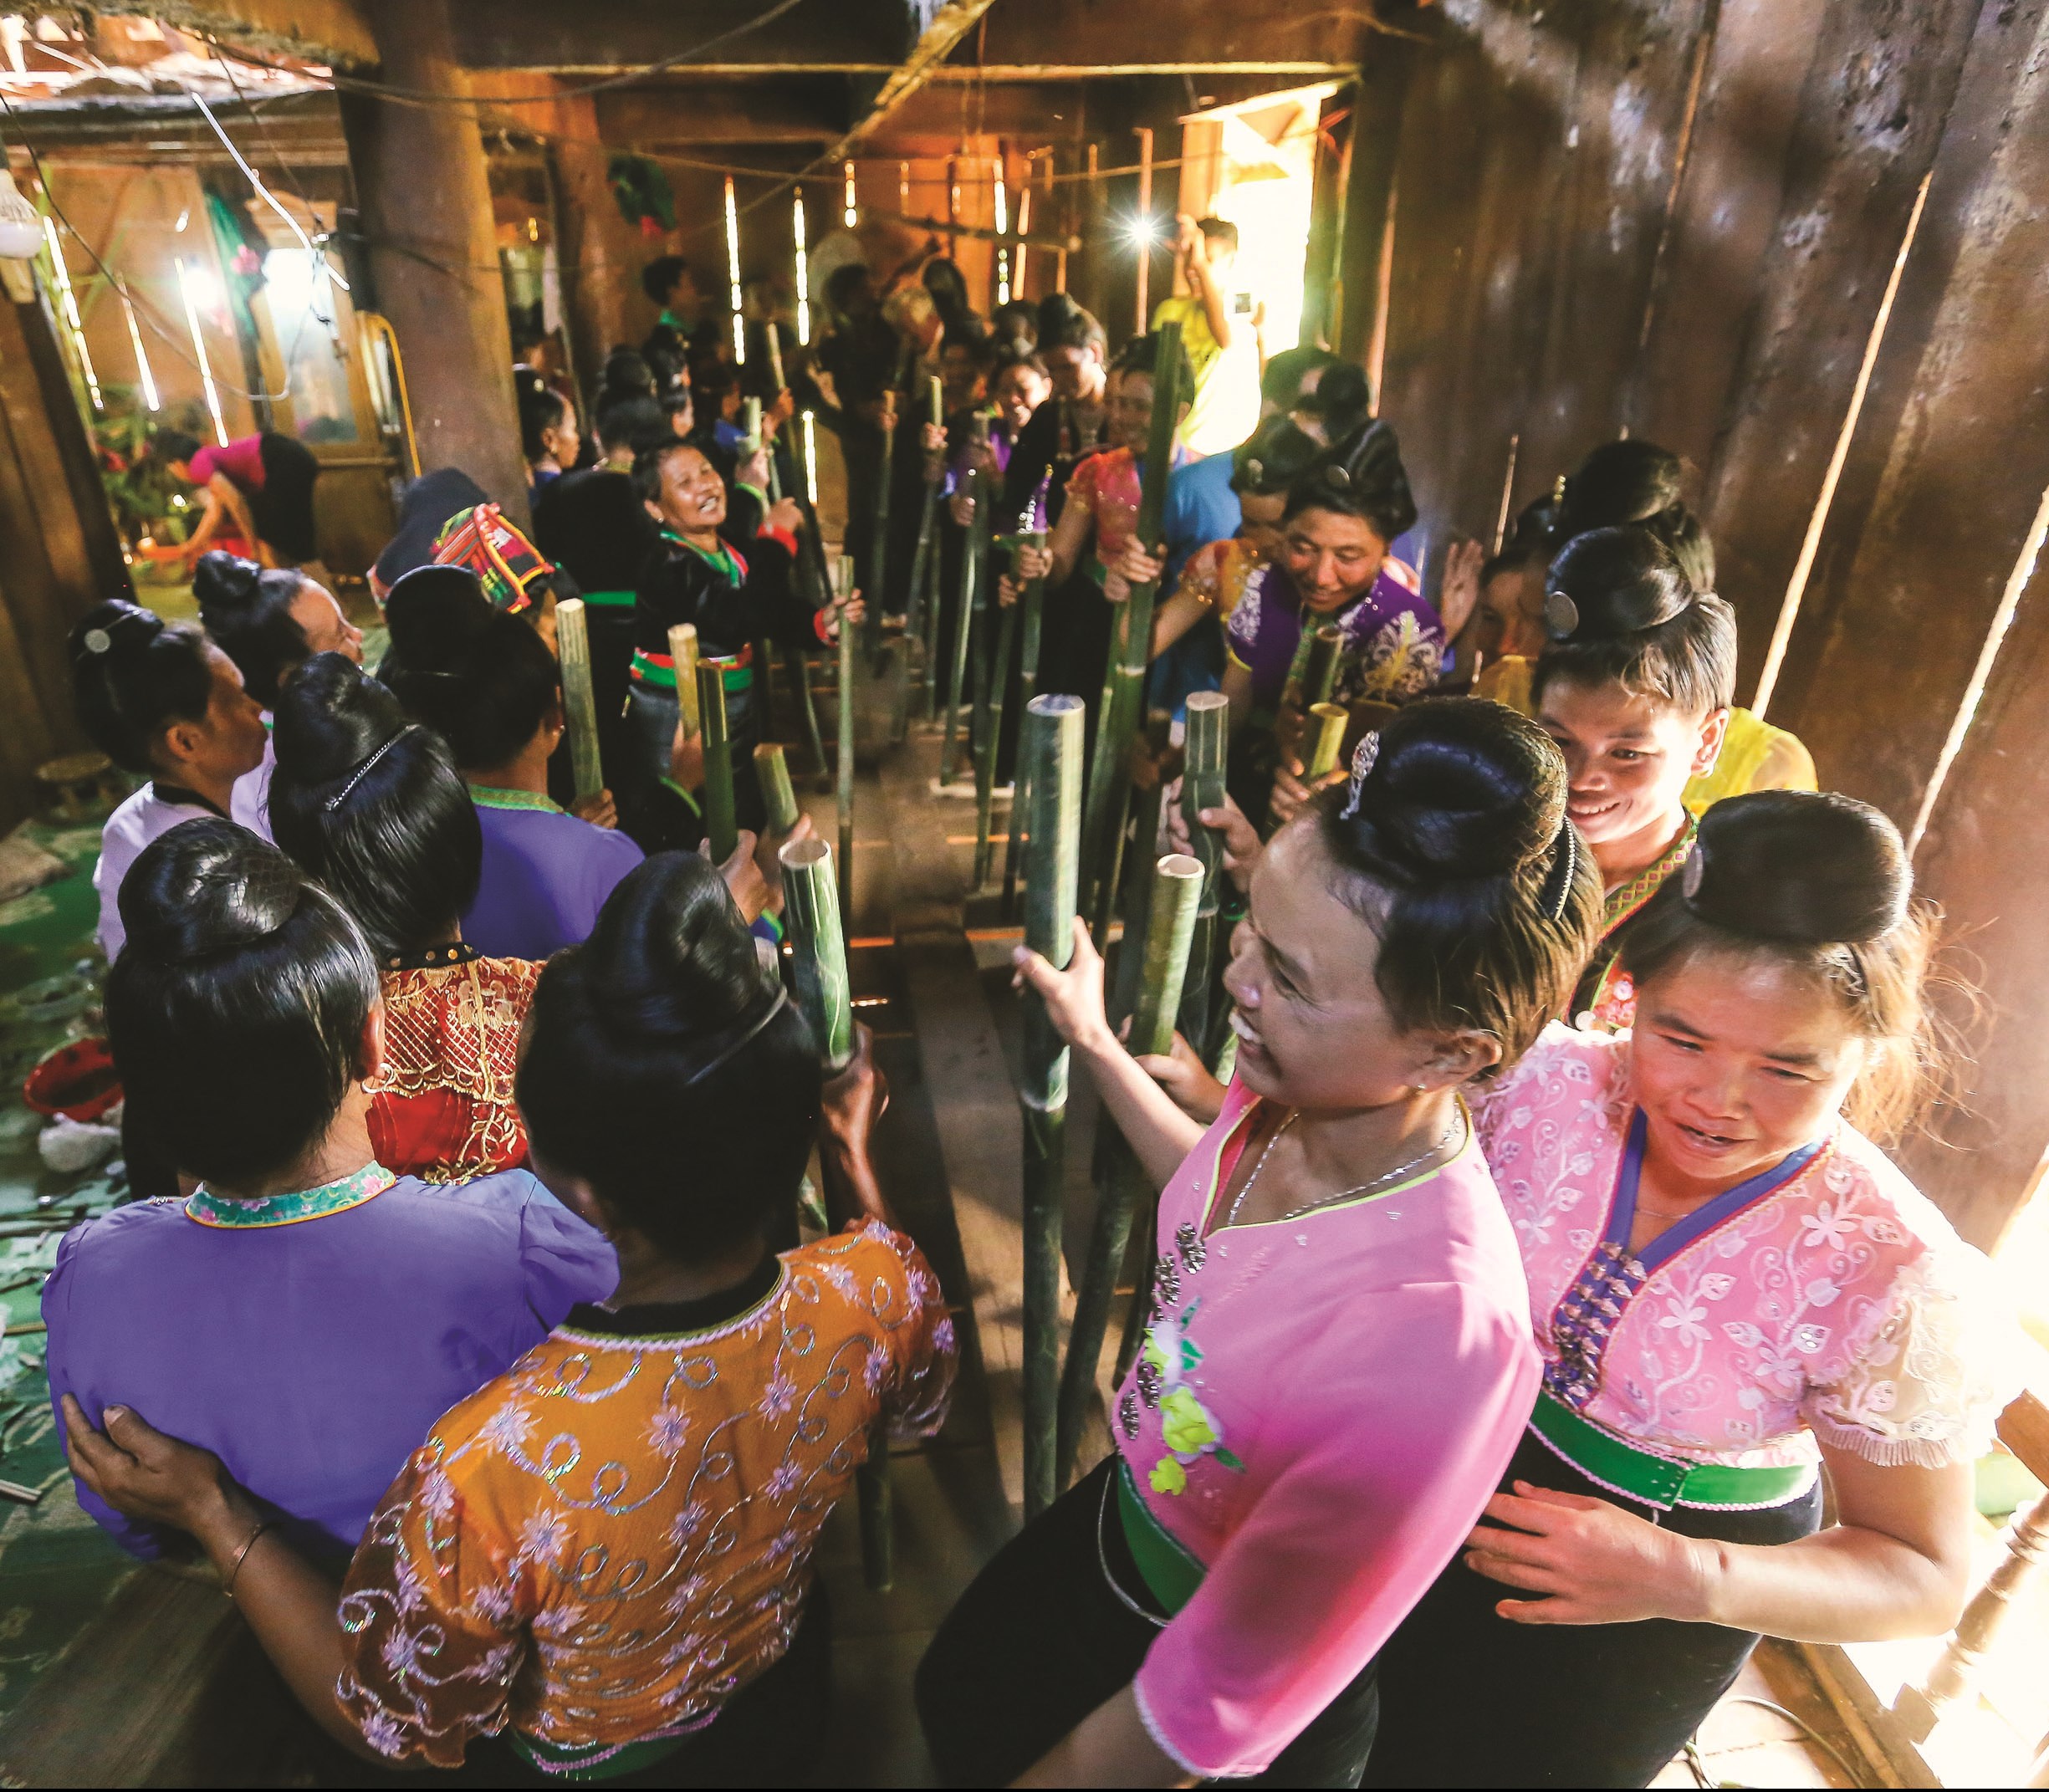 Điệu nhảy “Xé pang” trong lễ hội truyền thống Pang phoóng của dân tộc Kháng ở Điện Biên.